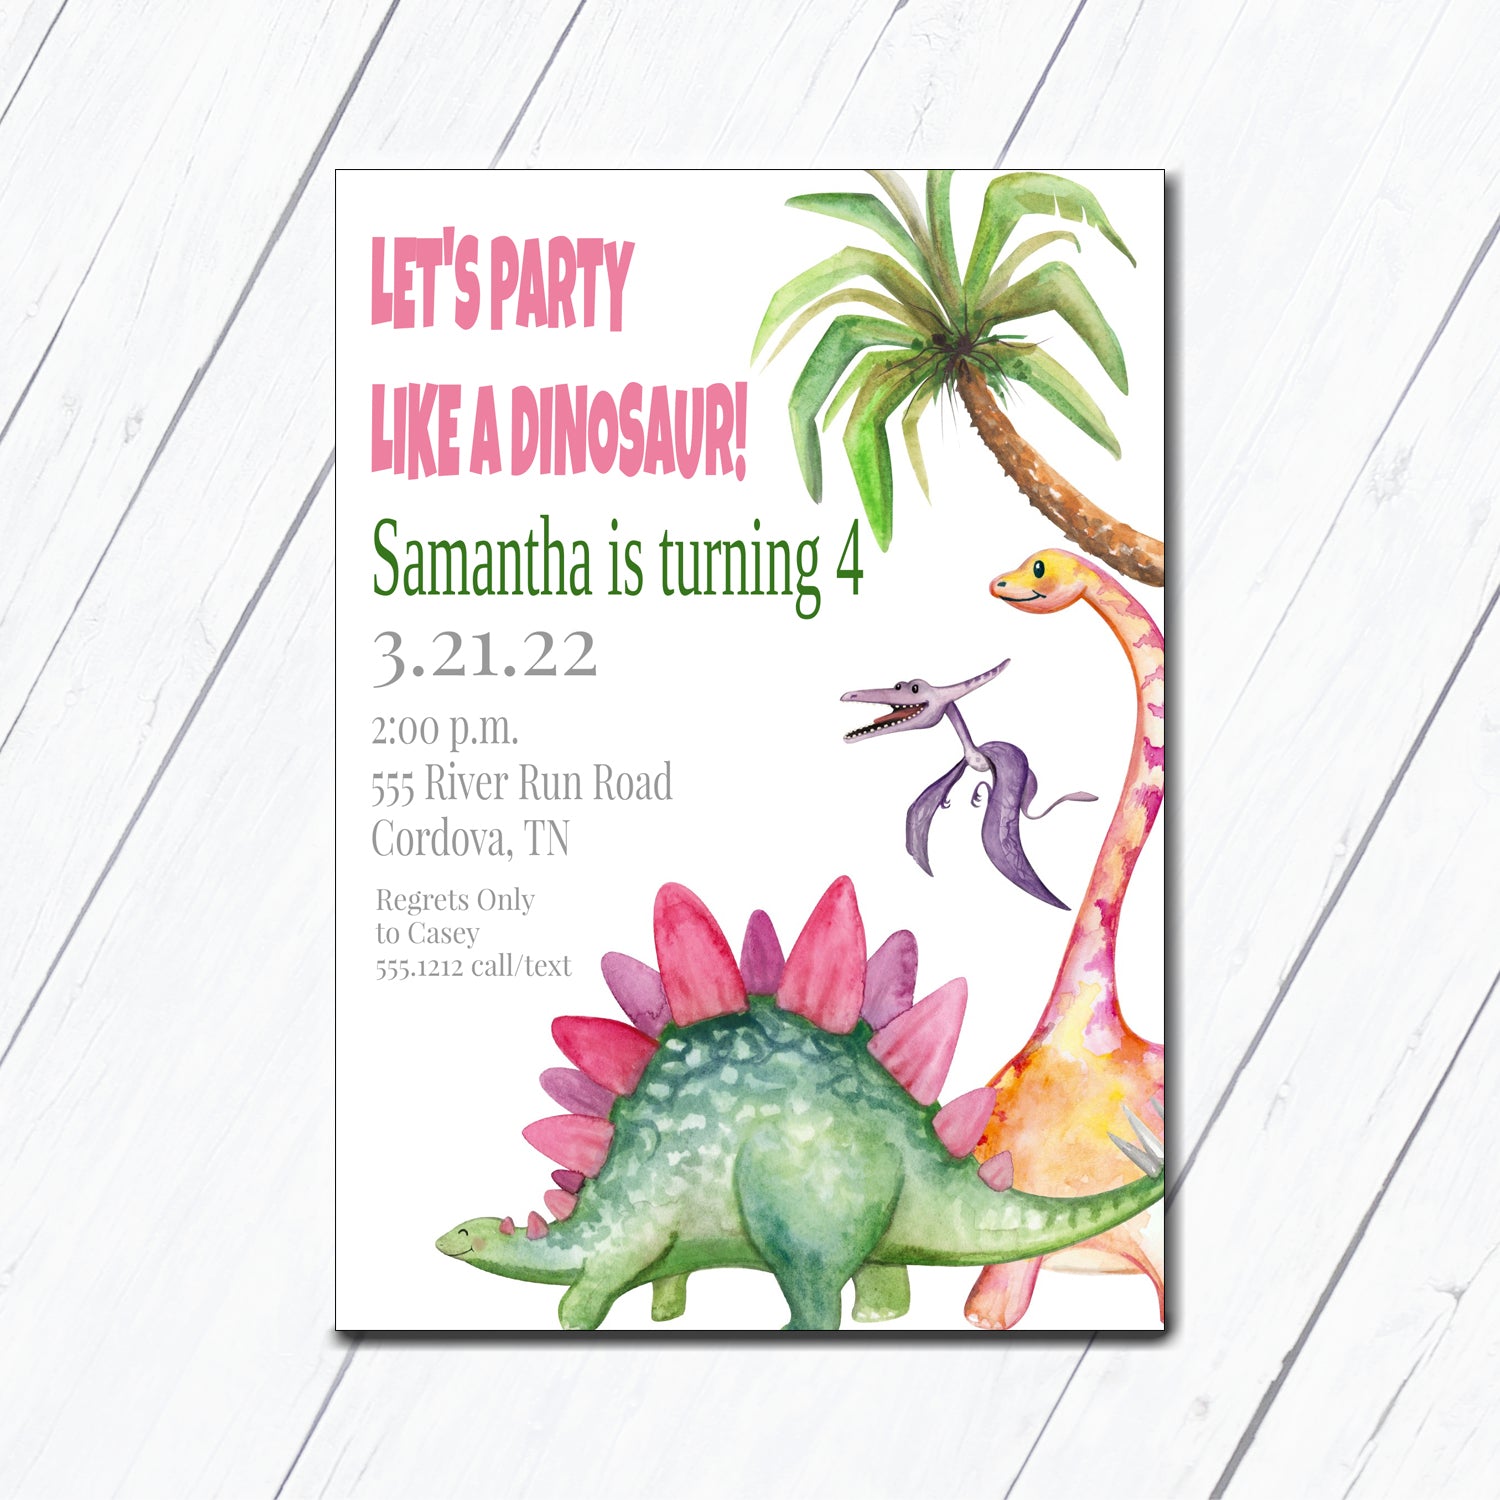 Pink Dinosaur Birthday Invitation